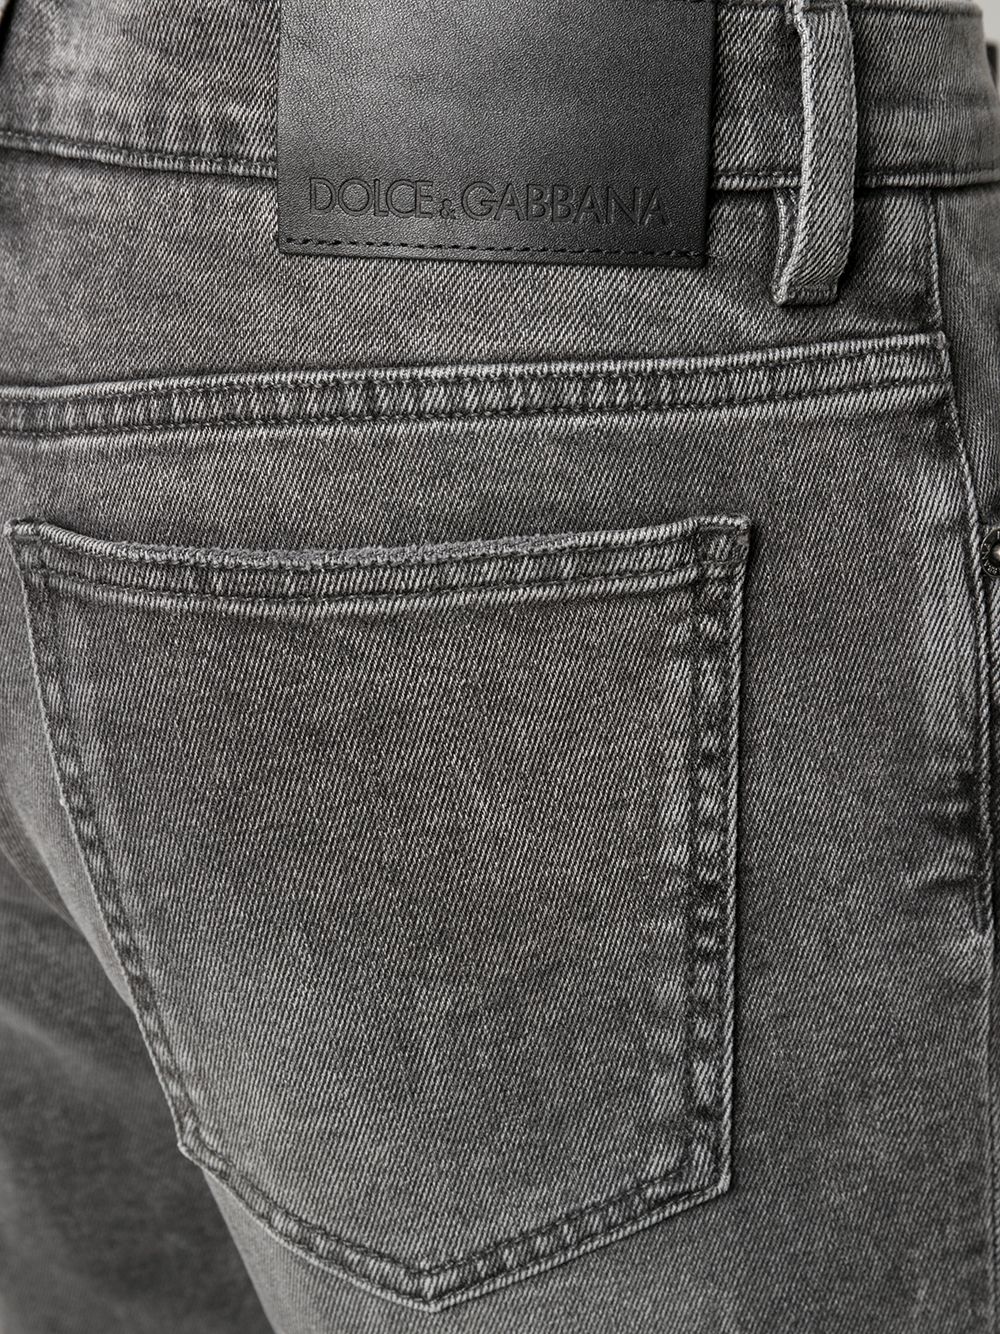 фото Dolce & gabbana джинсовые шорты с эффектом потертости